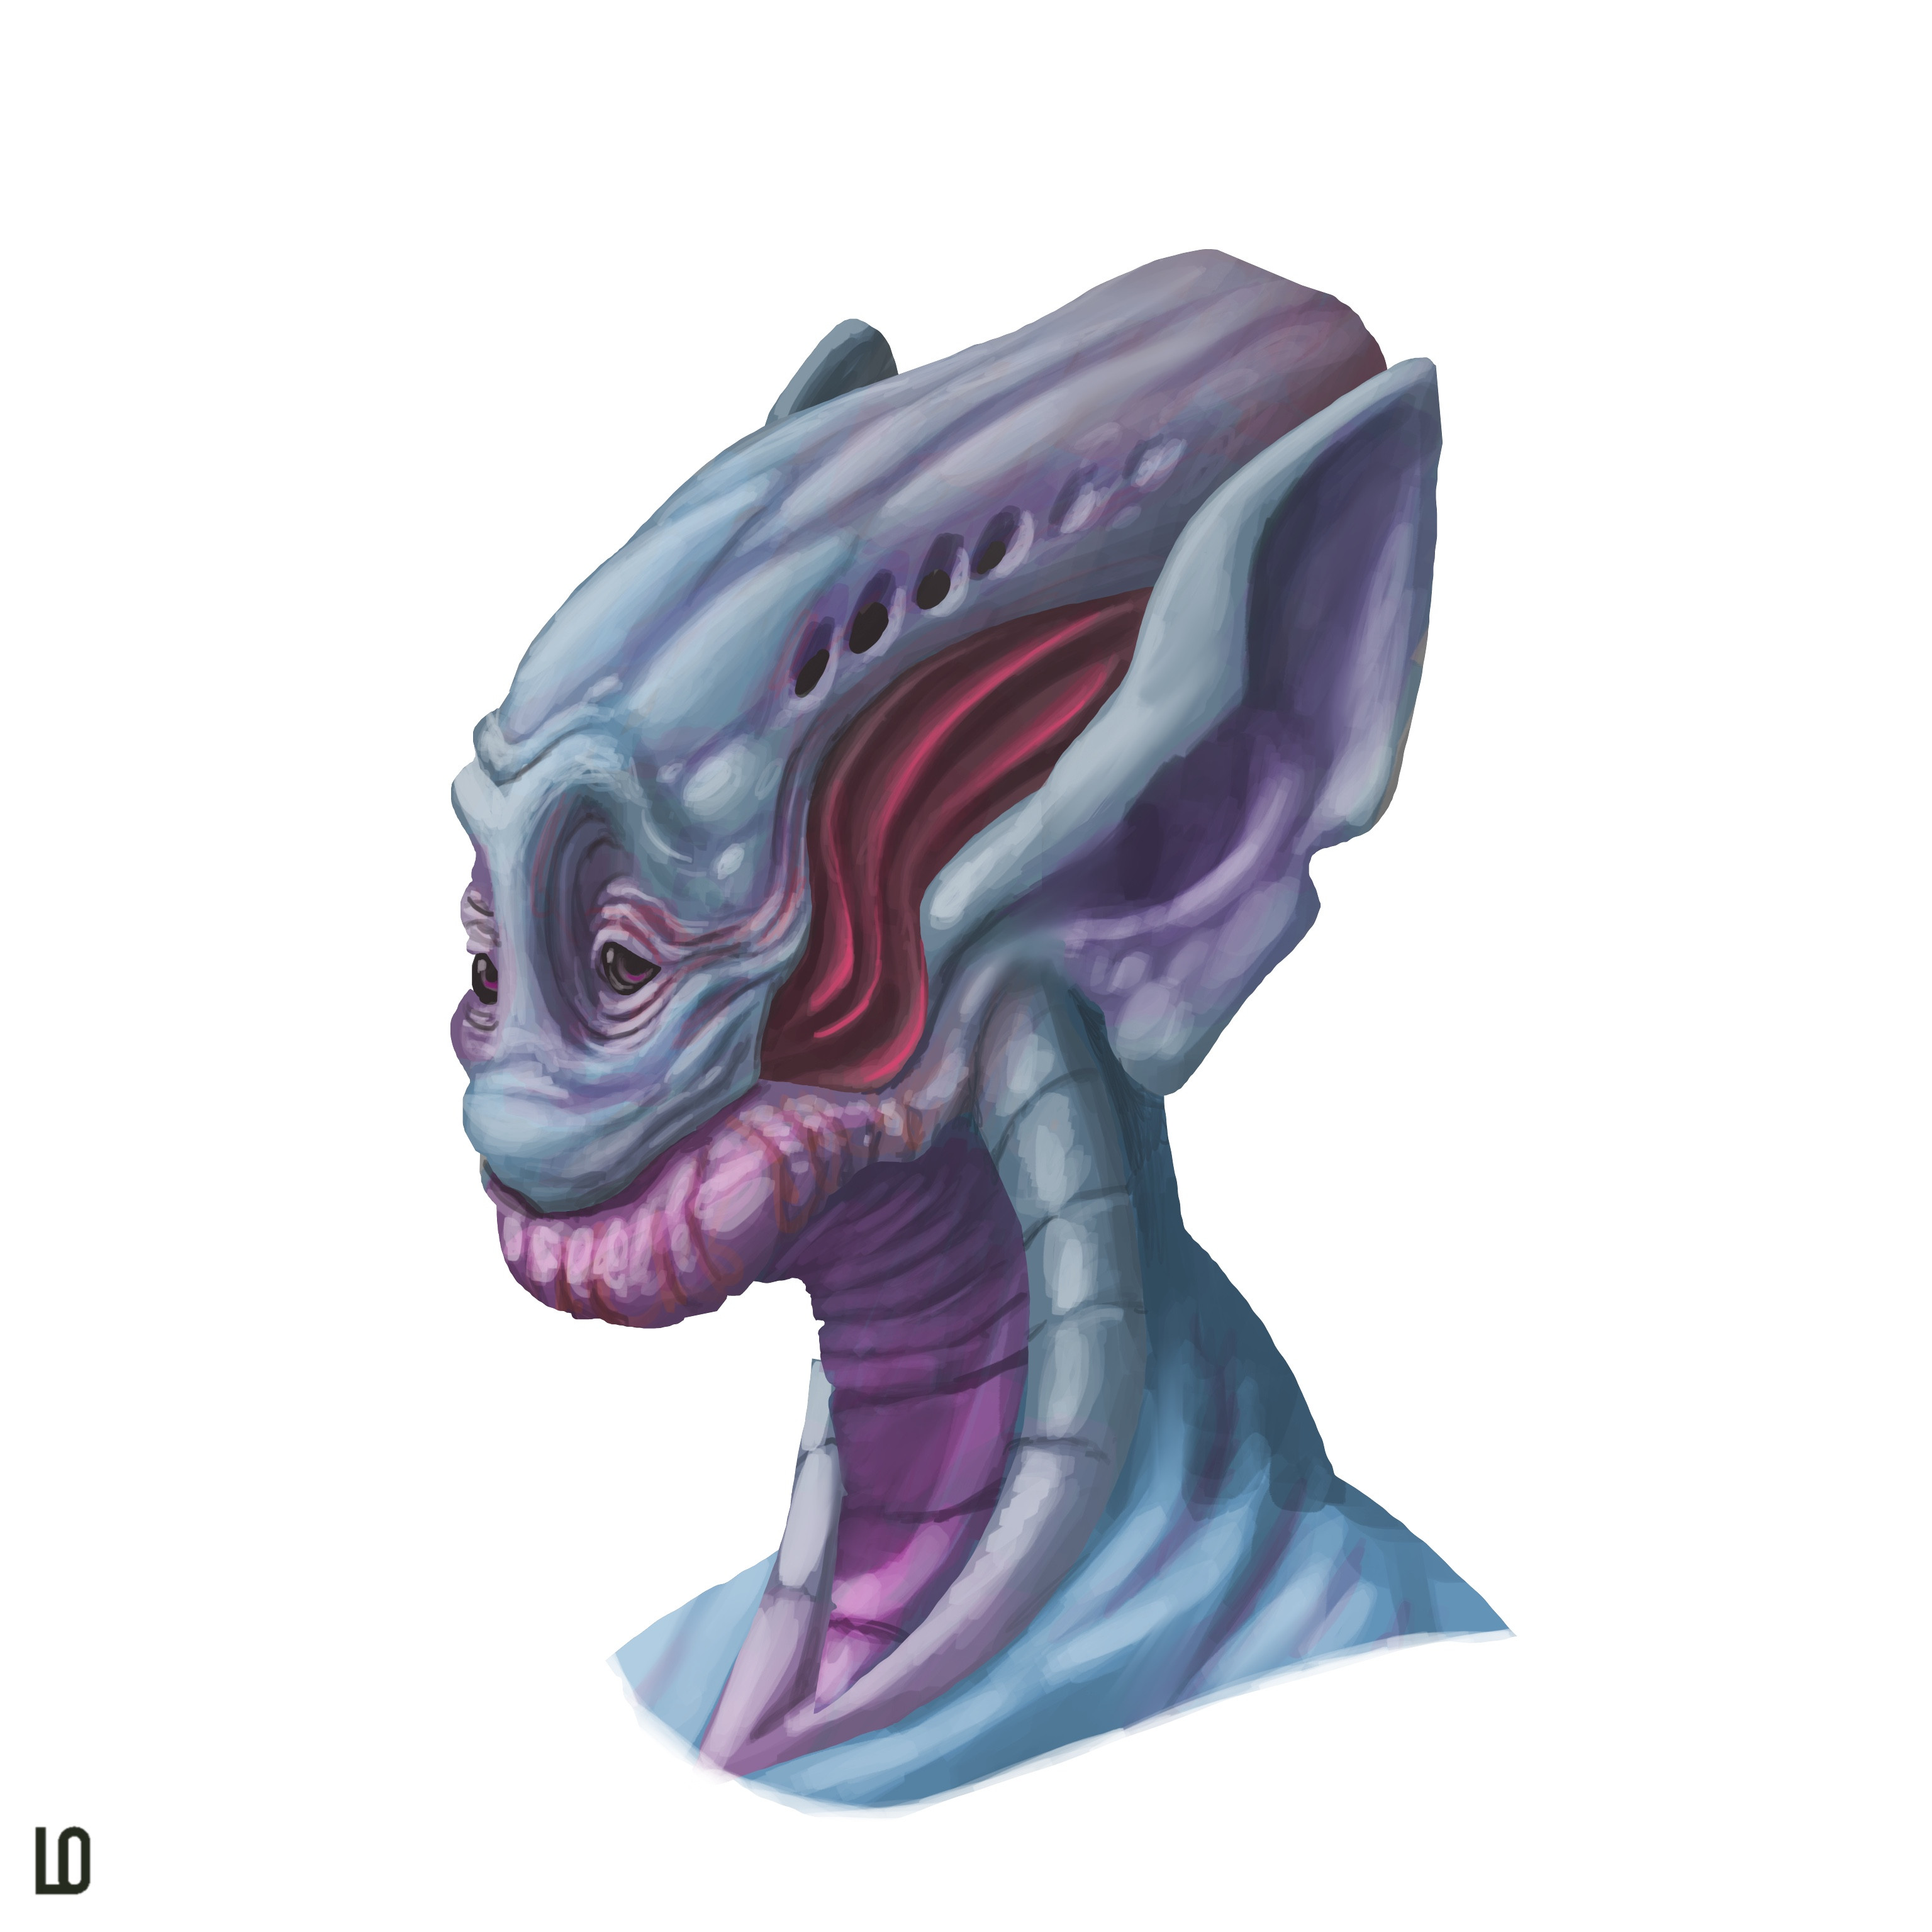 Alien character